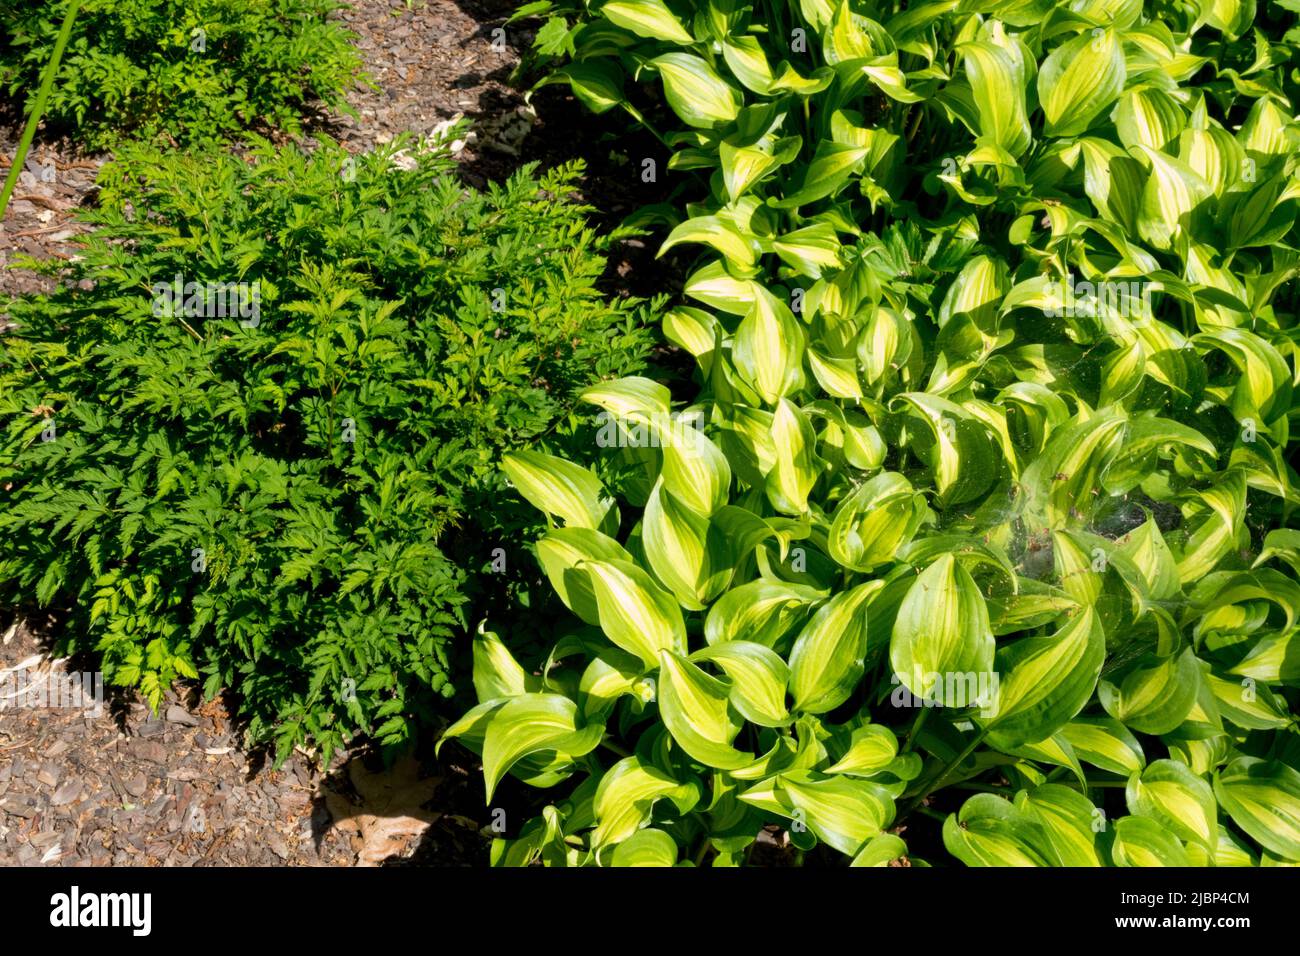 Aruncus 'Little Gem', Hosta 'Geisha', Plantain Lily, Hosta in Garden, Variegated Leaves, Perennials, Plants Stock Photo